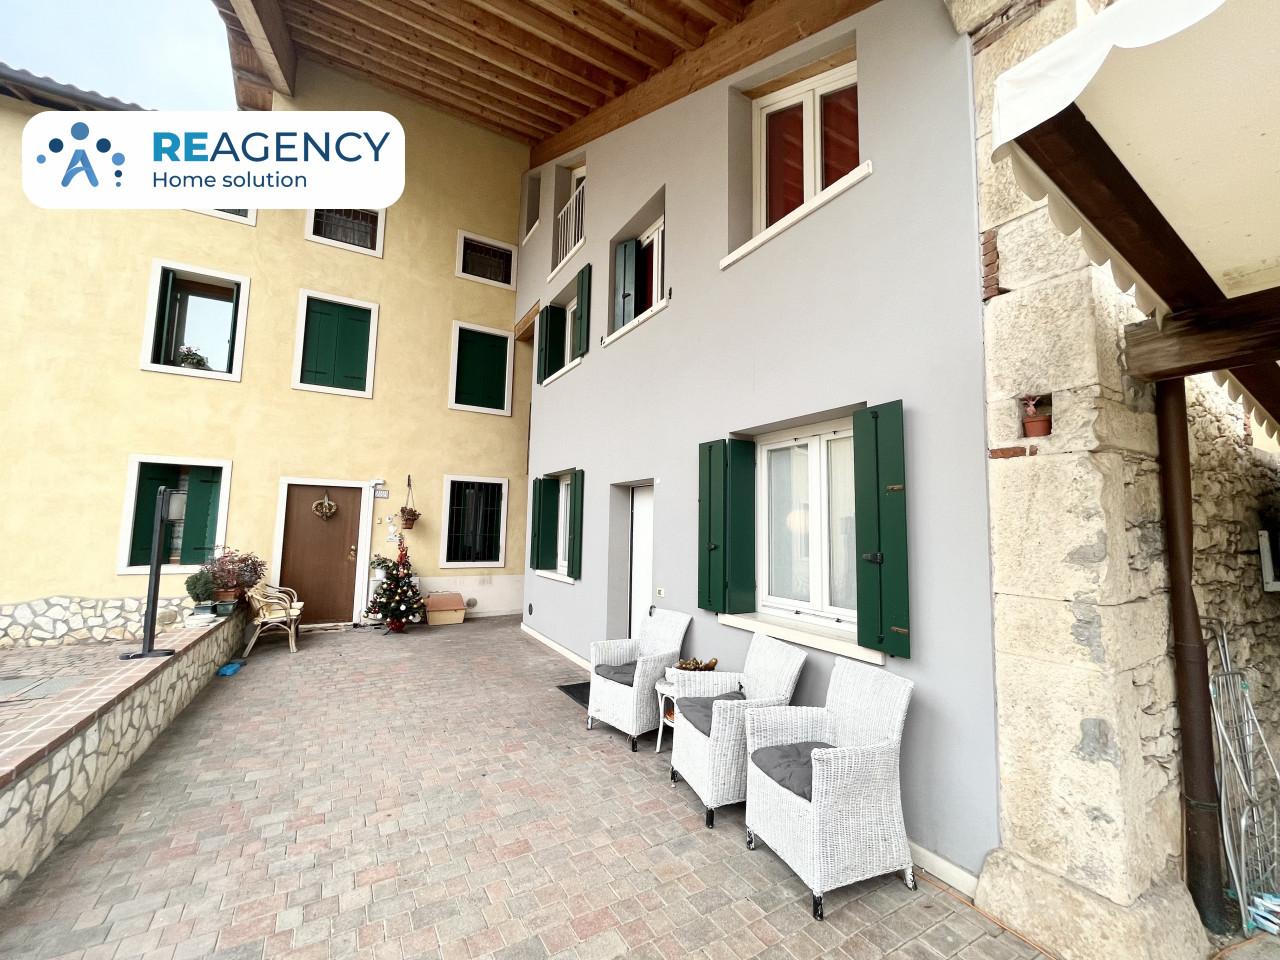 Appartamento in vendita a Montecchio Maggiore